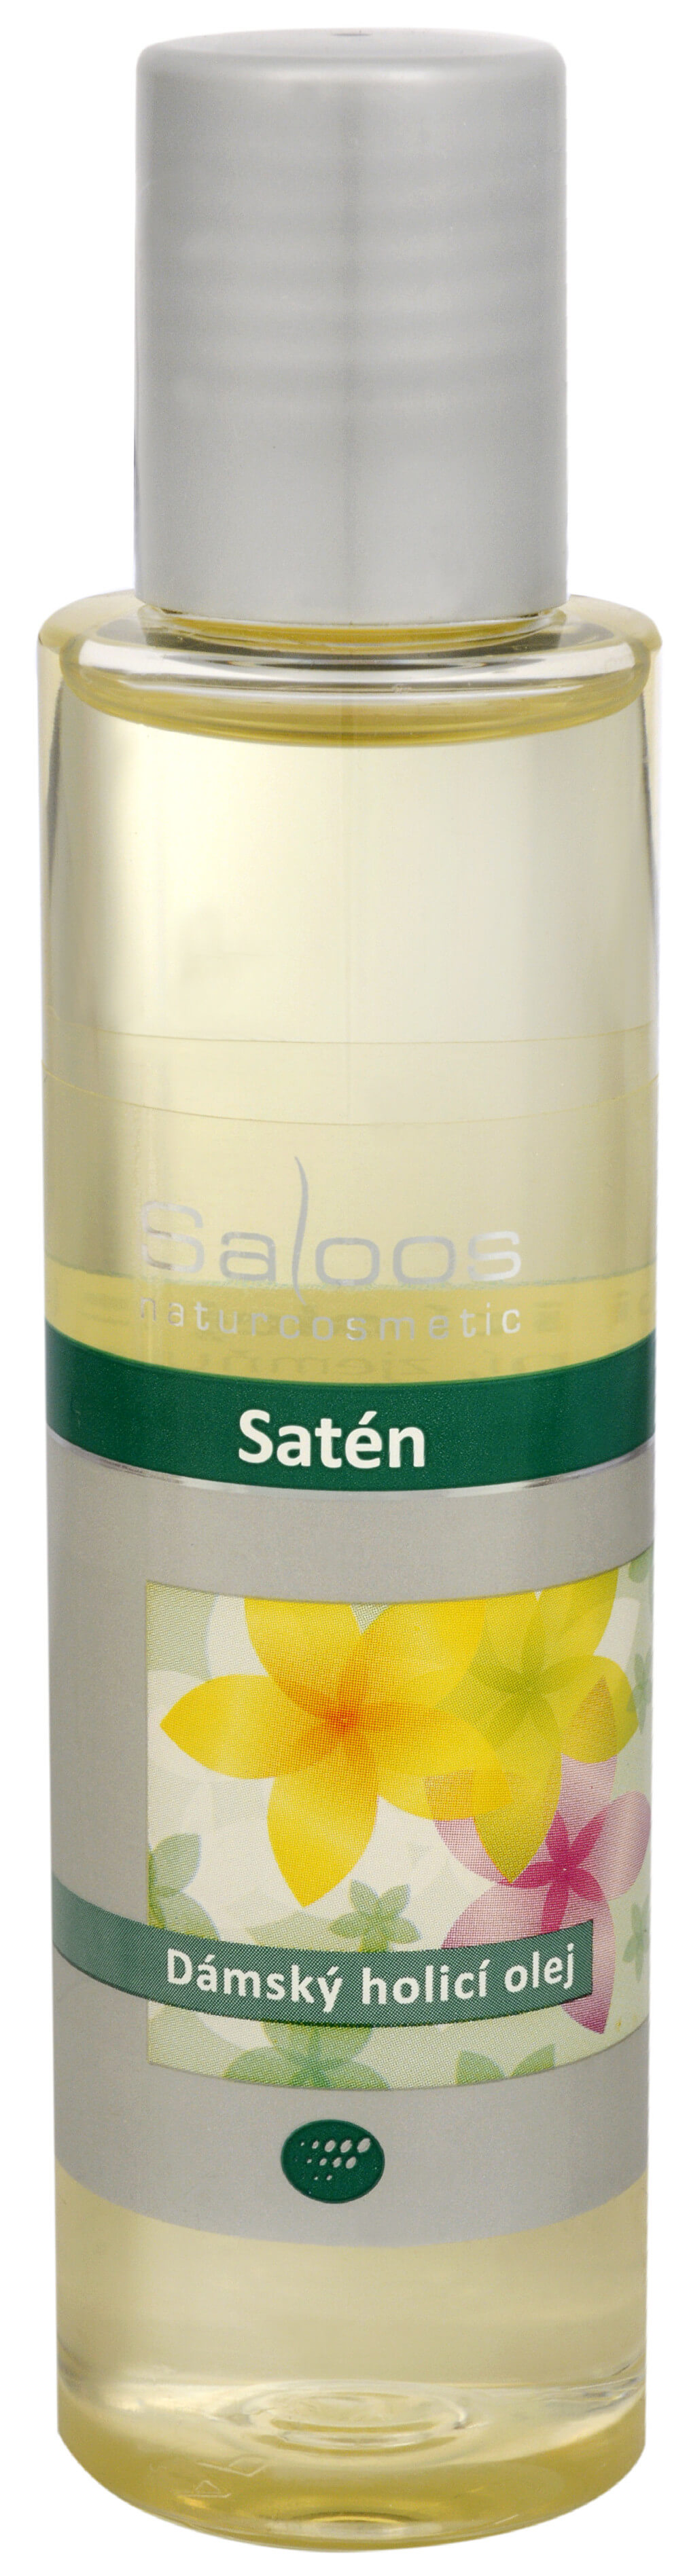 Zobrazit detail výrobku Saloos Satén - dámský holicí olej 250 ml